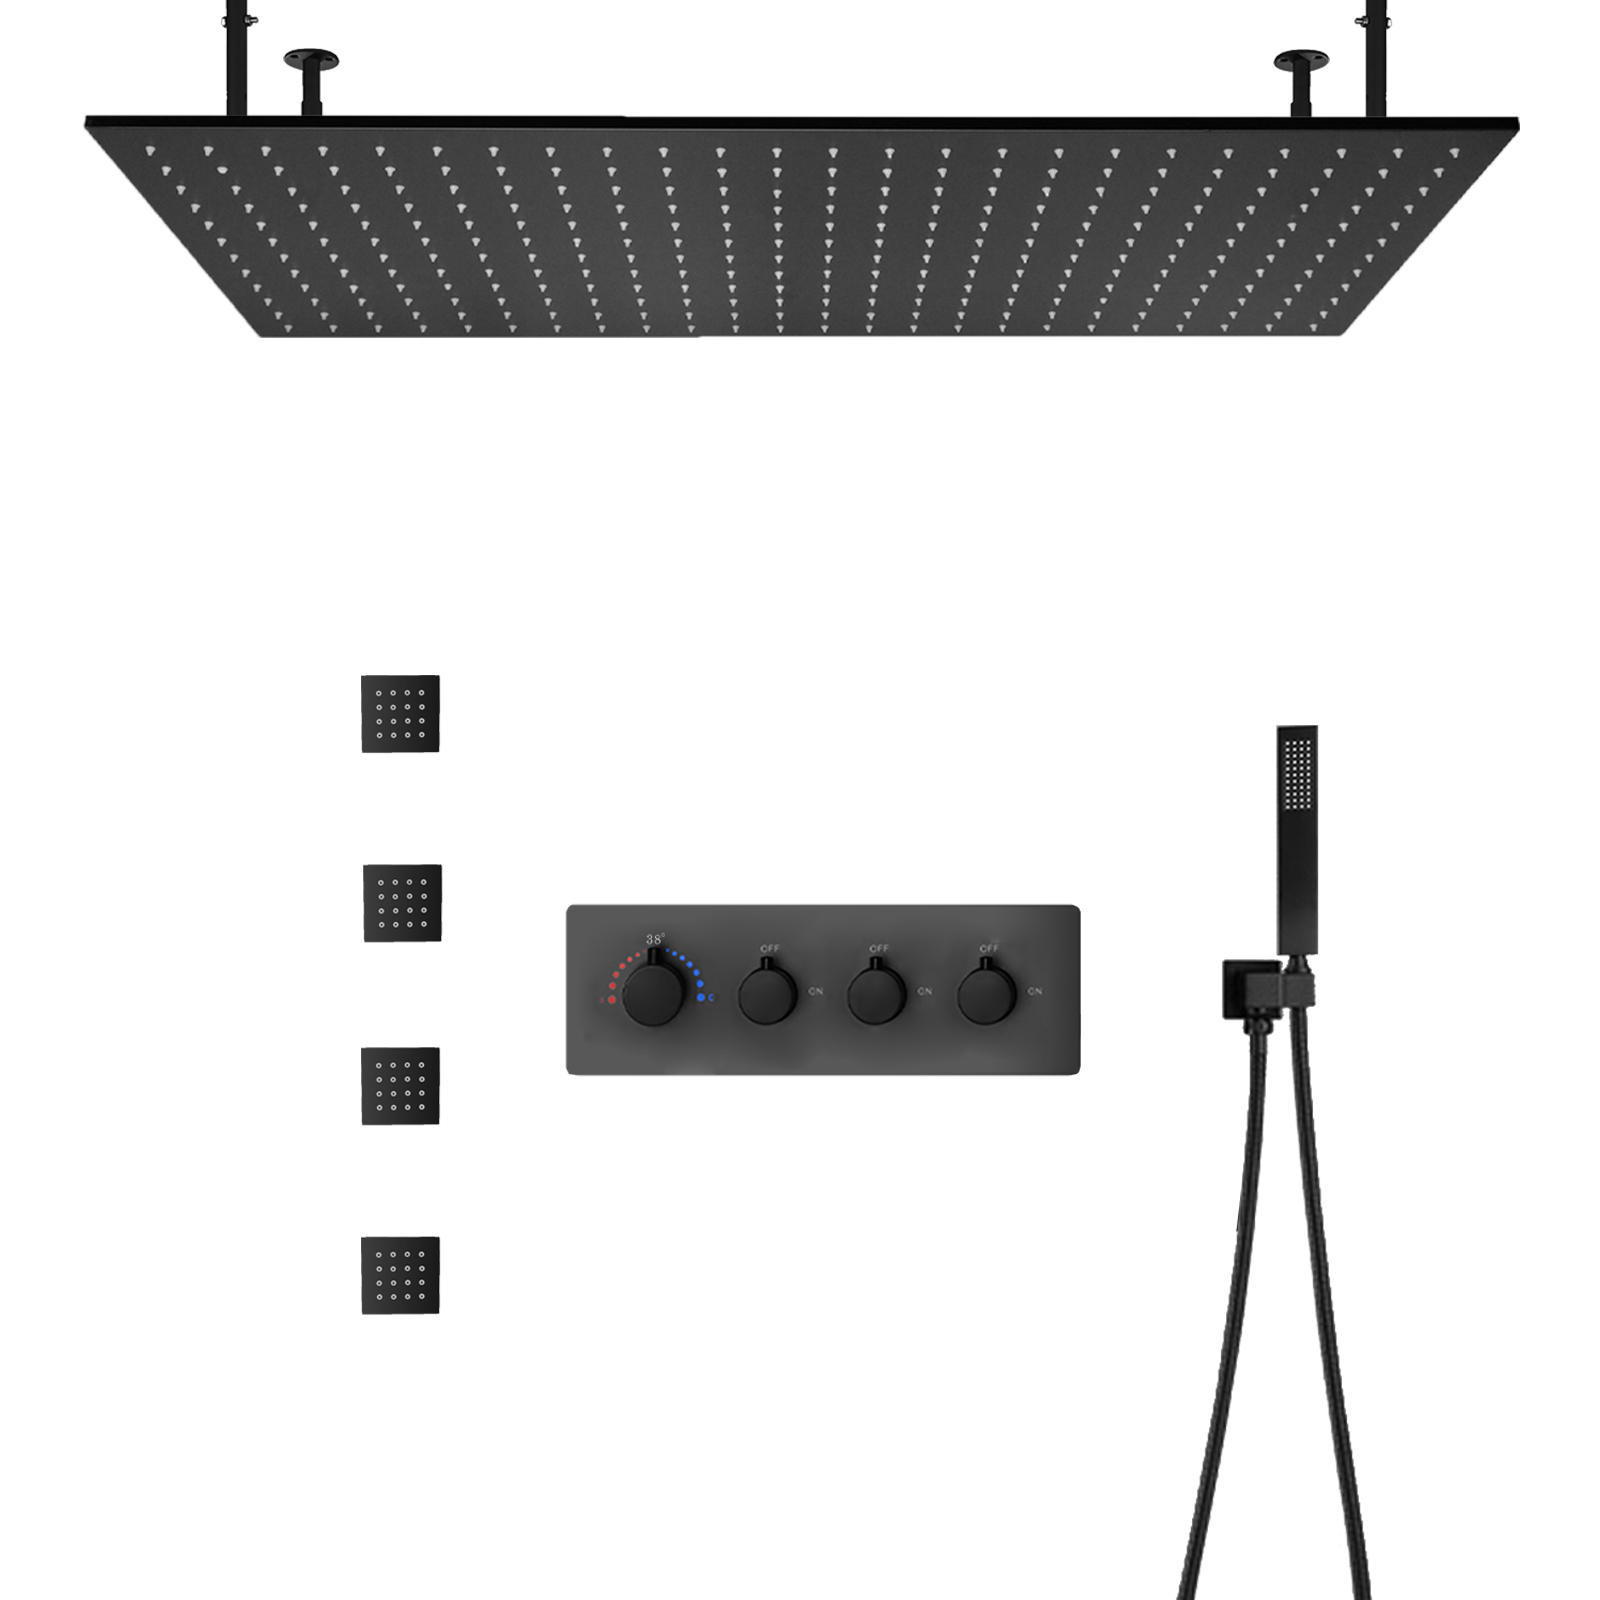 100x50 سنتيمتر ماتي الأسود درجة حرارة ثابتة دش مجموعة مجموعة الحائط LED نظام رأس دش